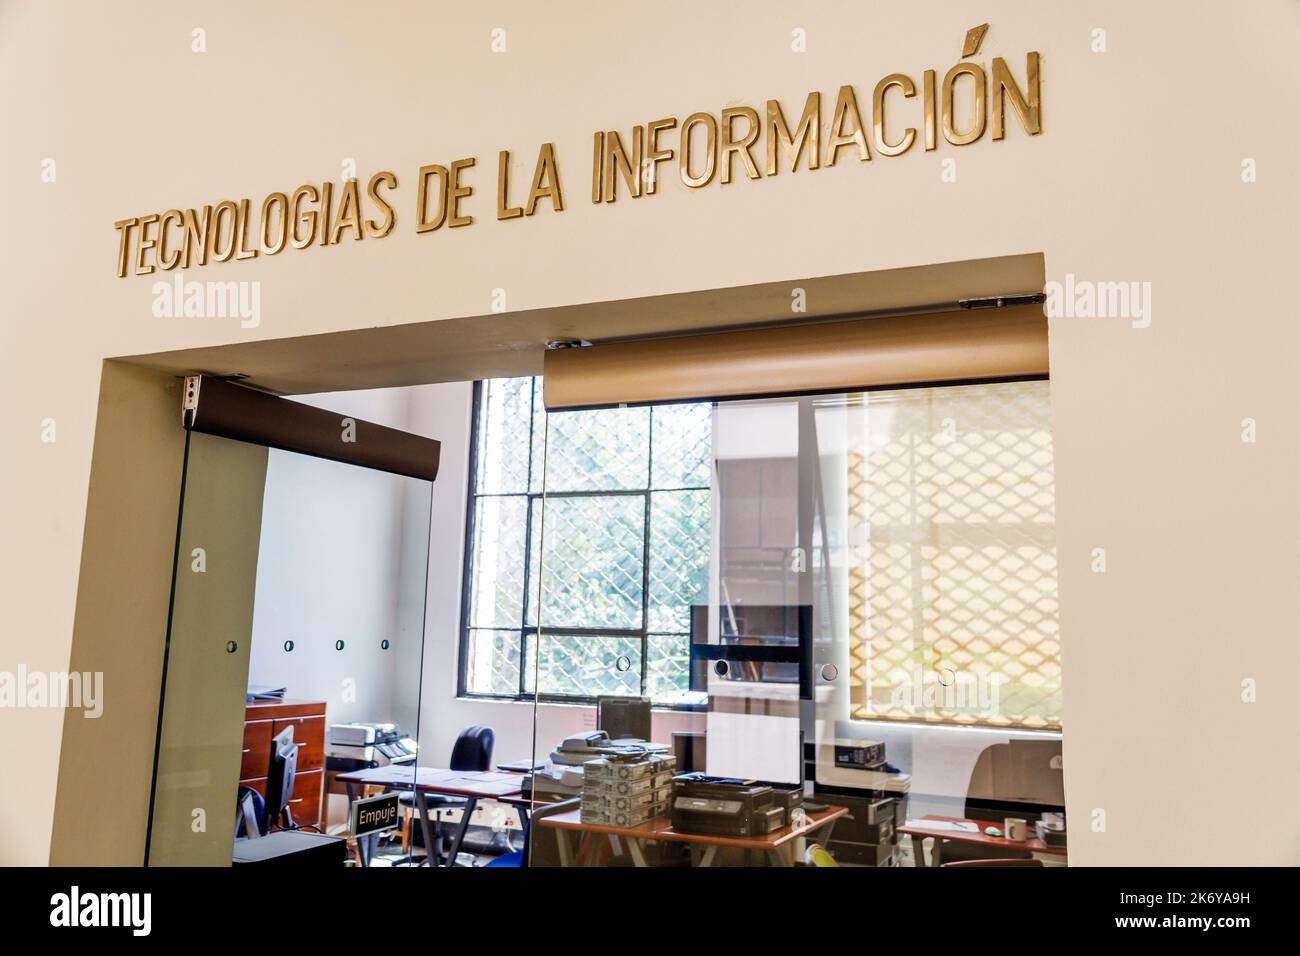 Bogota Colombia, Santa Fe Biblioteca Nacional de Colombia National Library of Colombia, lingua spagnola sala delle tecnologie dell'informazione, mostre Foto Stock